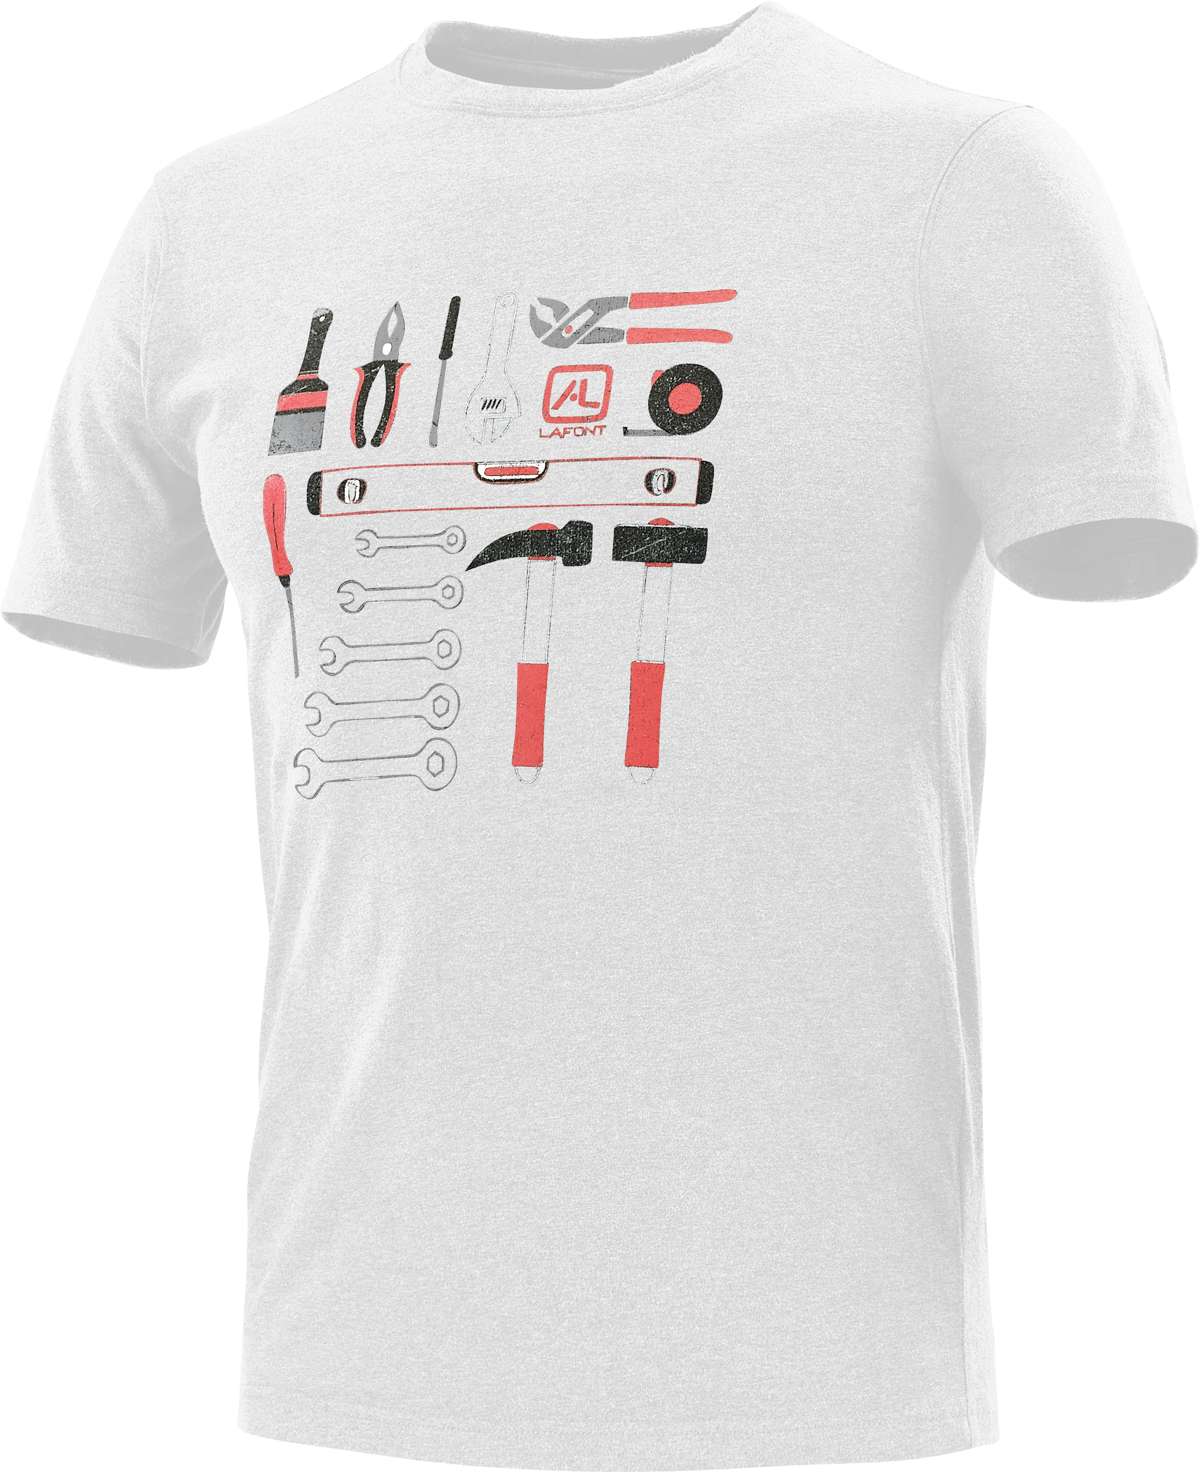 Рубашка с короткими рукавами, размер S – 3XL, ремесленный принт.